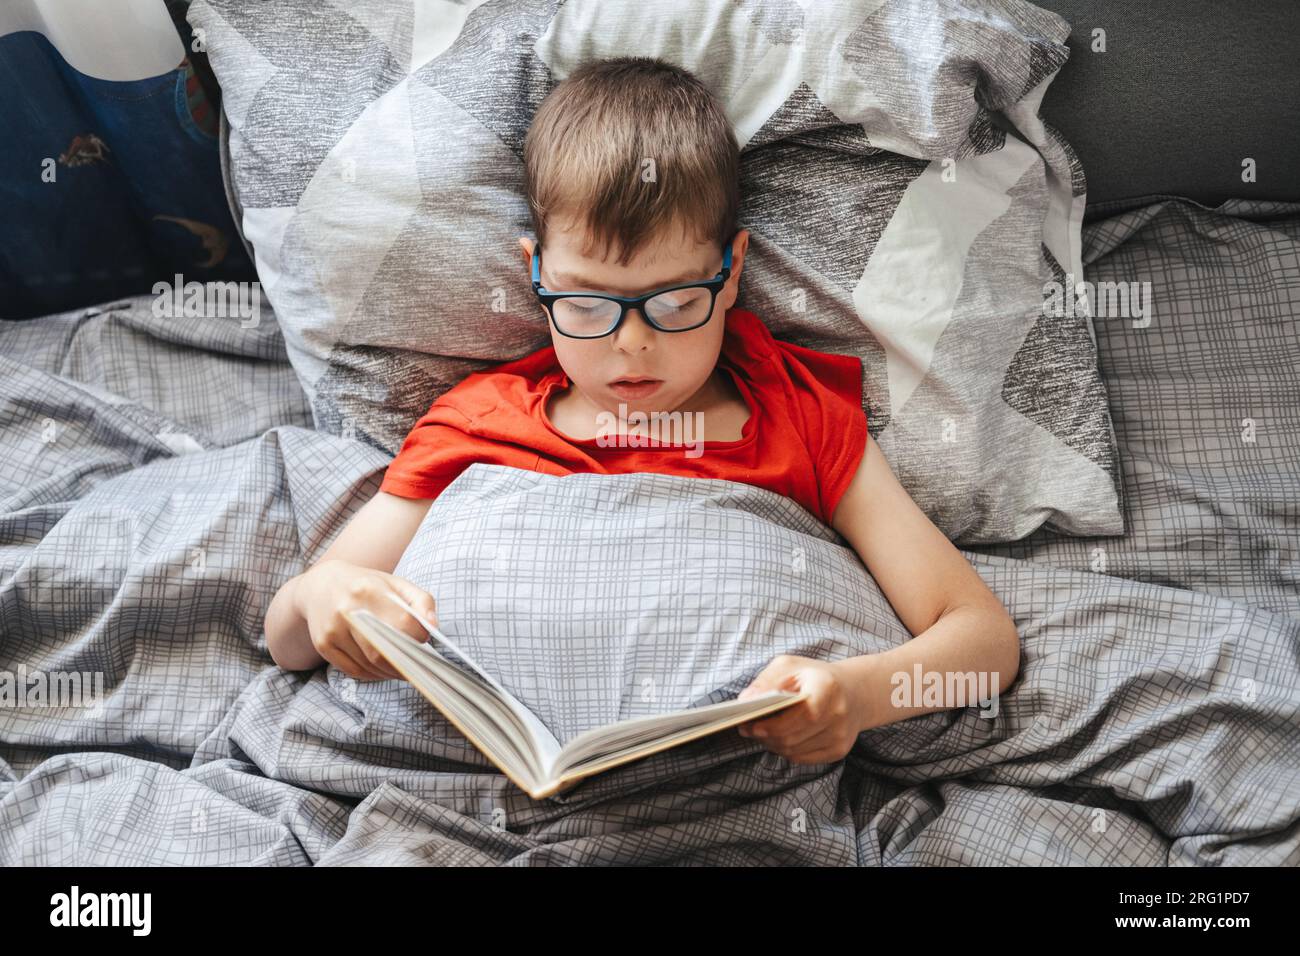 chico con gafas se encuentra en una cama debajo de una manta y lee un libro, vista superior. Un niño en edad de escuela primaria está leyendo un libro en su cama. Foto de stock